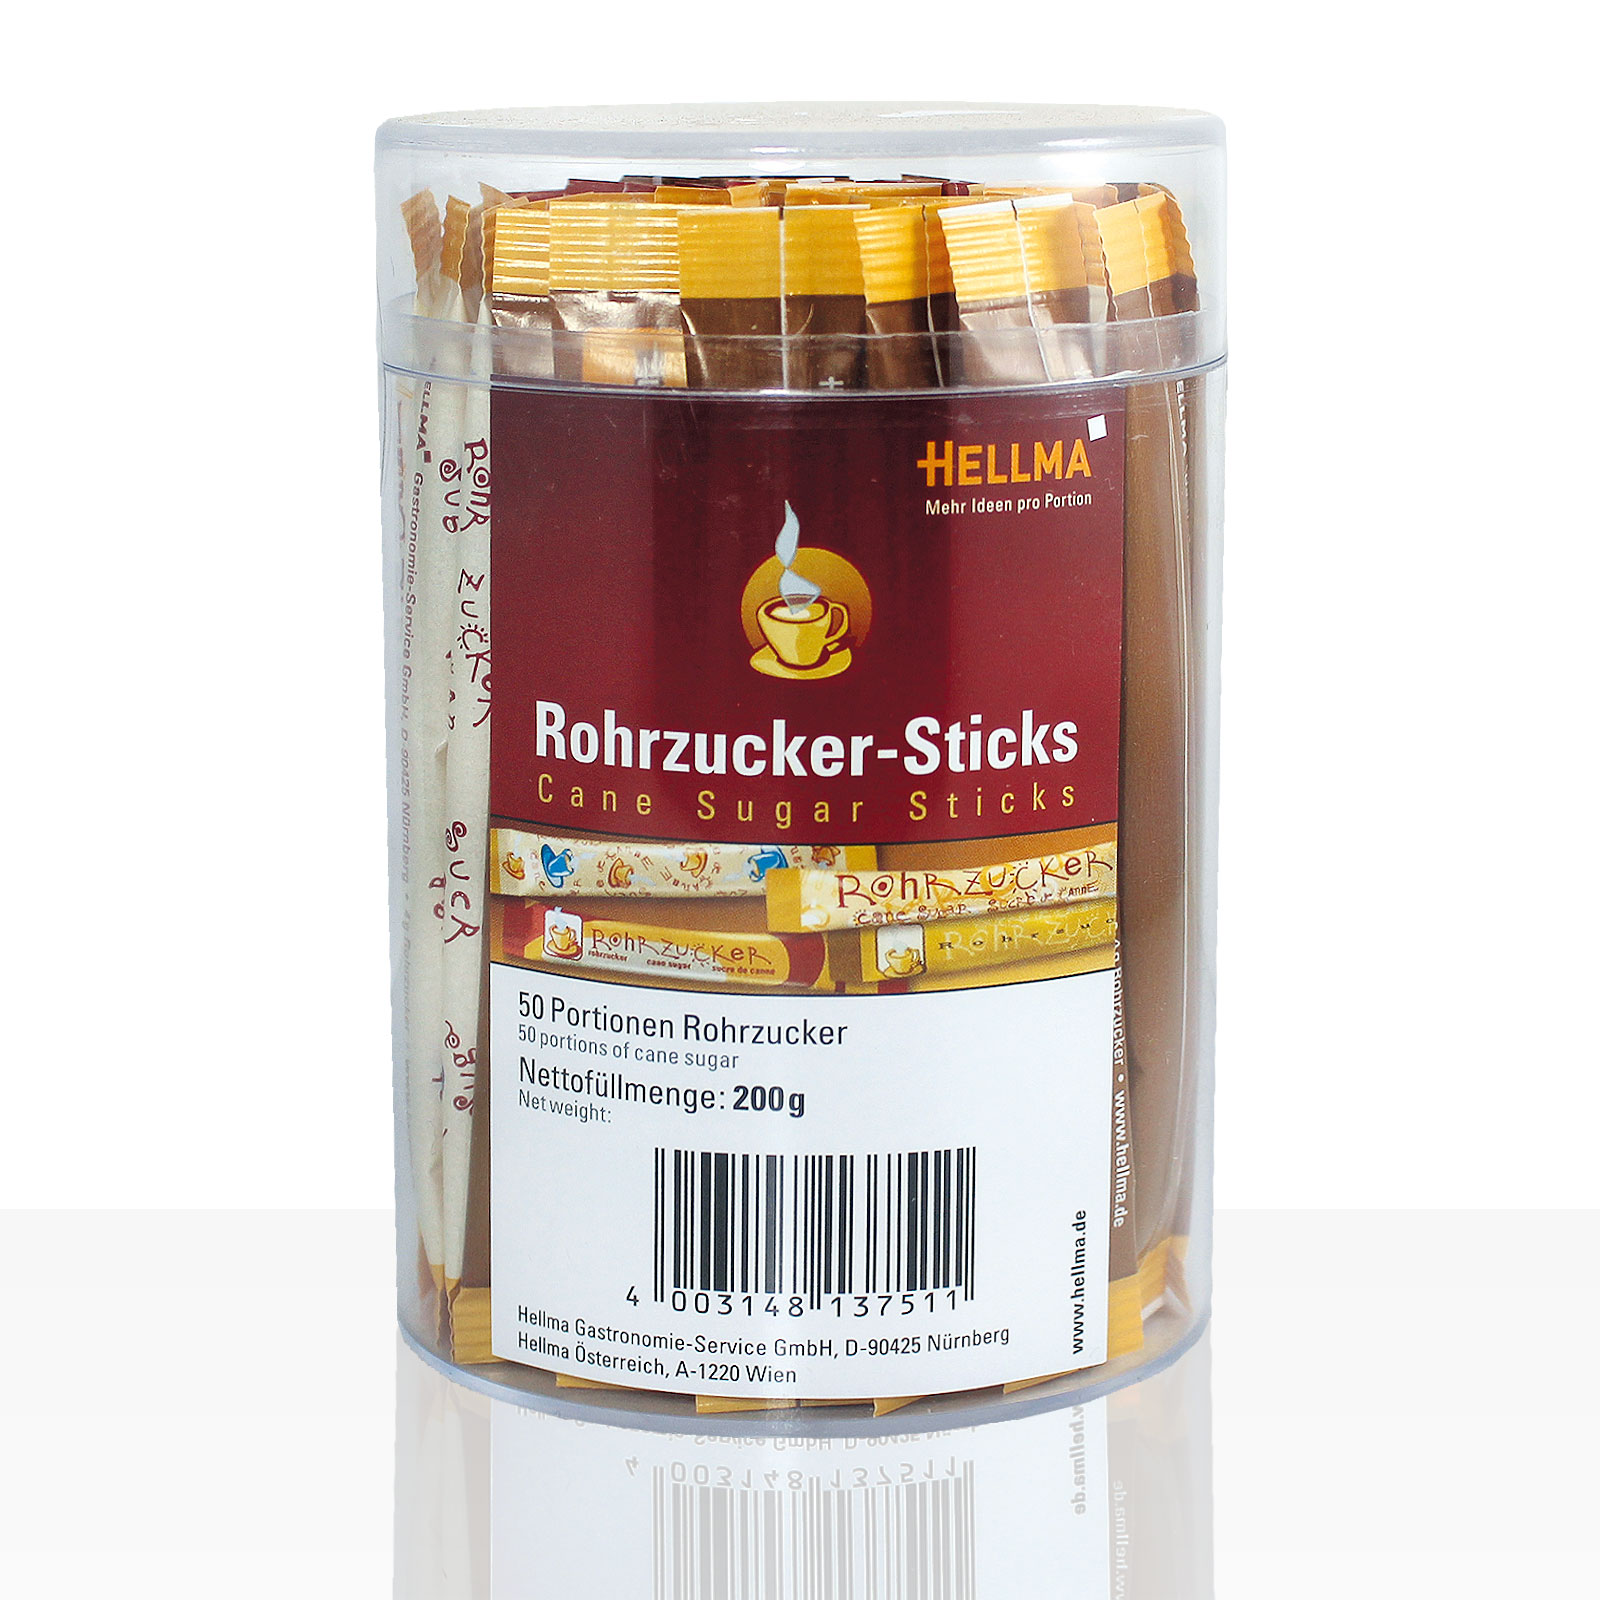 Hellma Rohrzucker-Sticks 50 x 4g in der Runddose, Portions-Zucker